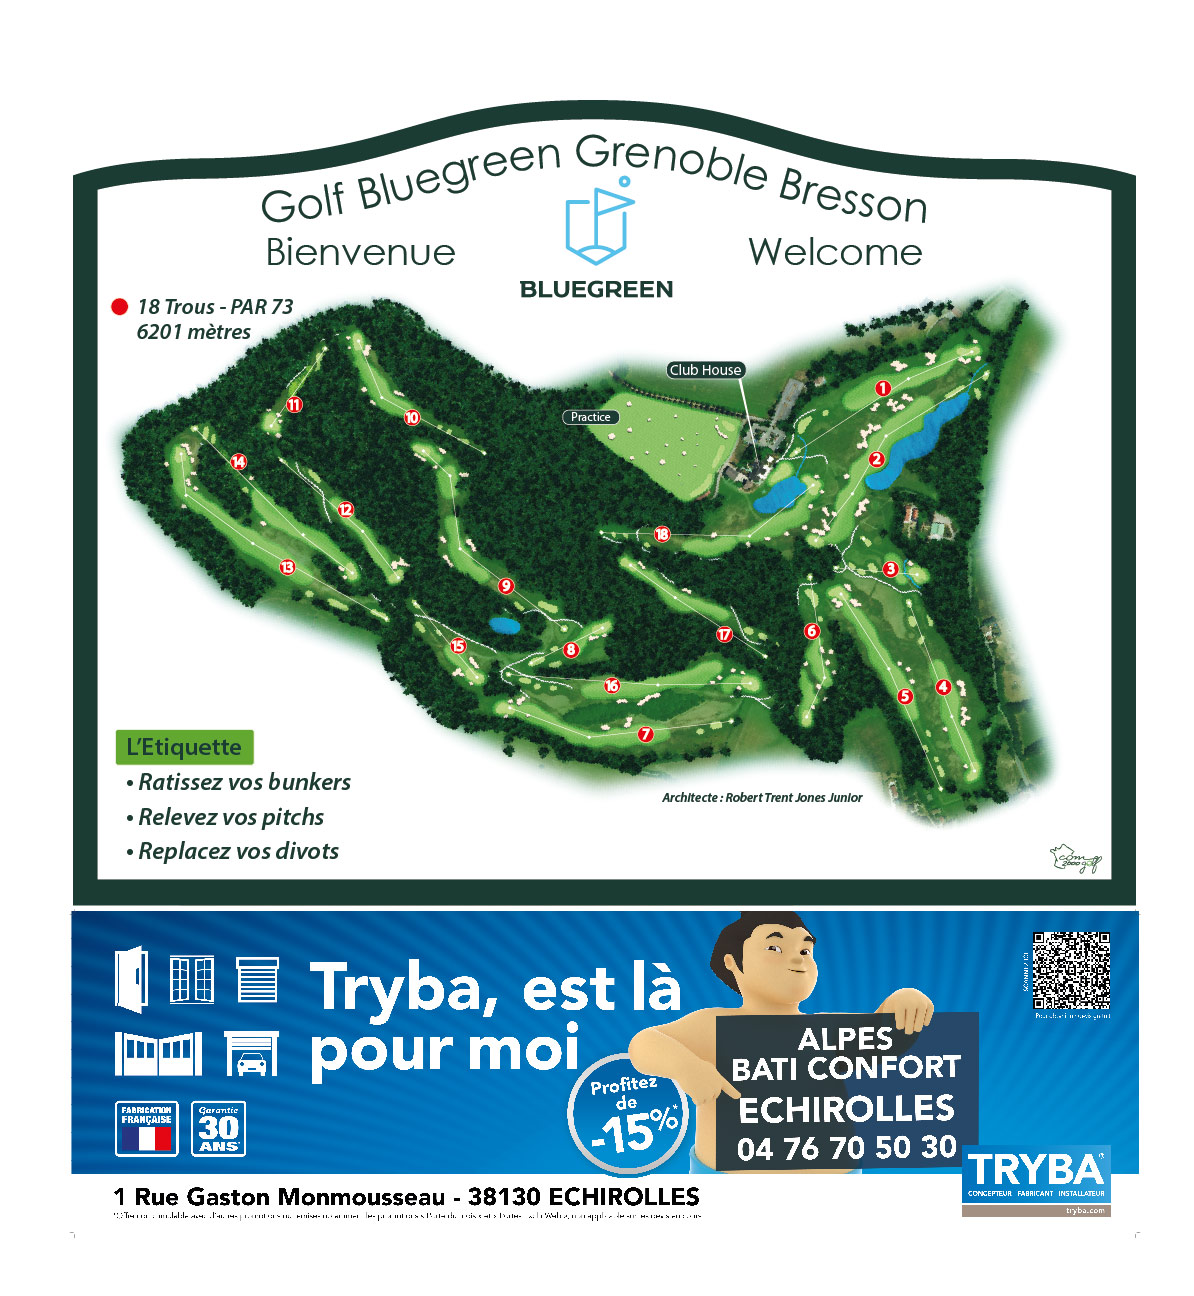 Golf Bluegreen Grenoble-Bresson